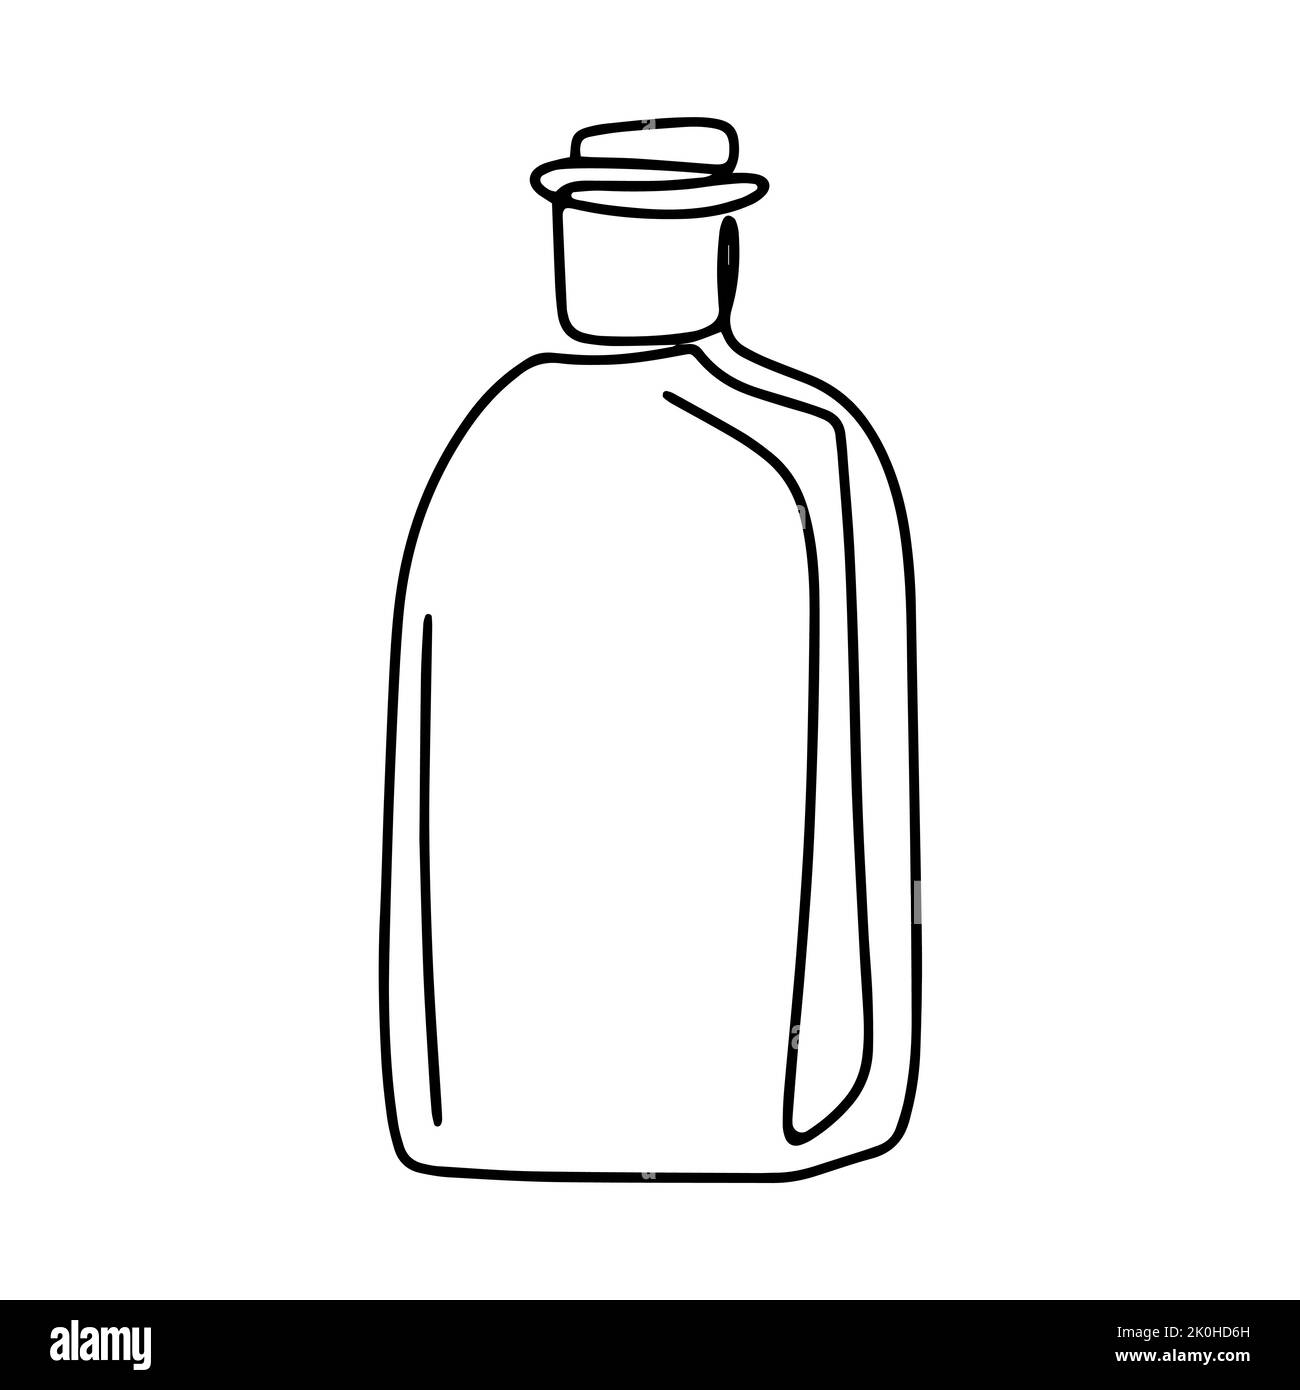 Glasflasche für Flüssigkeiten Linie Kunst isoliert Vektor Illustration. Einfaches Umrissbild eines alten Glasgefäßes. Schwarze Skizze auf weißem Hintergrund Flasche Stock Vektor